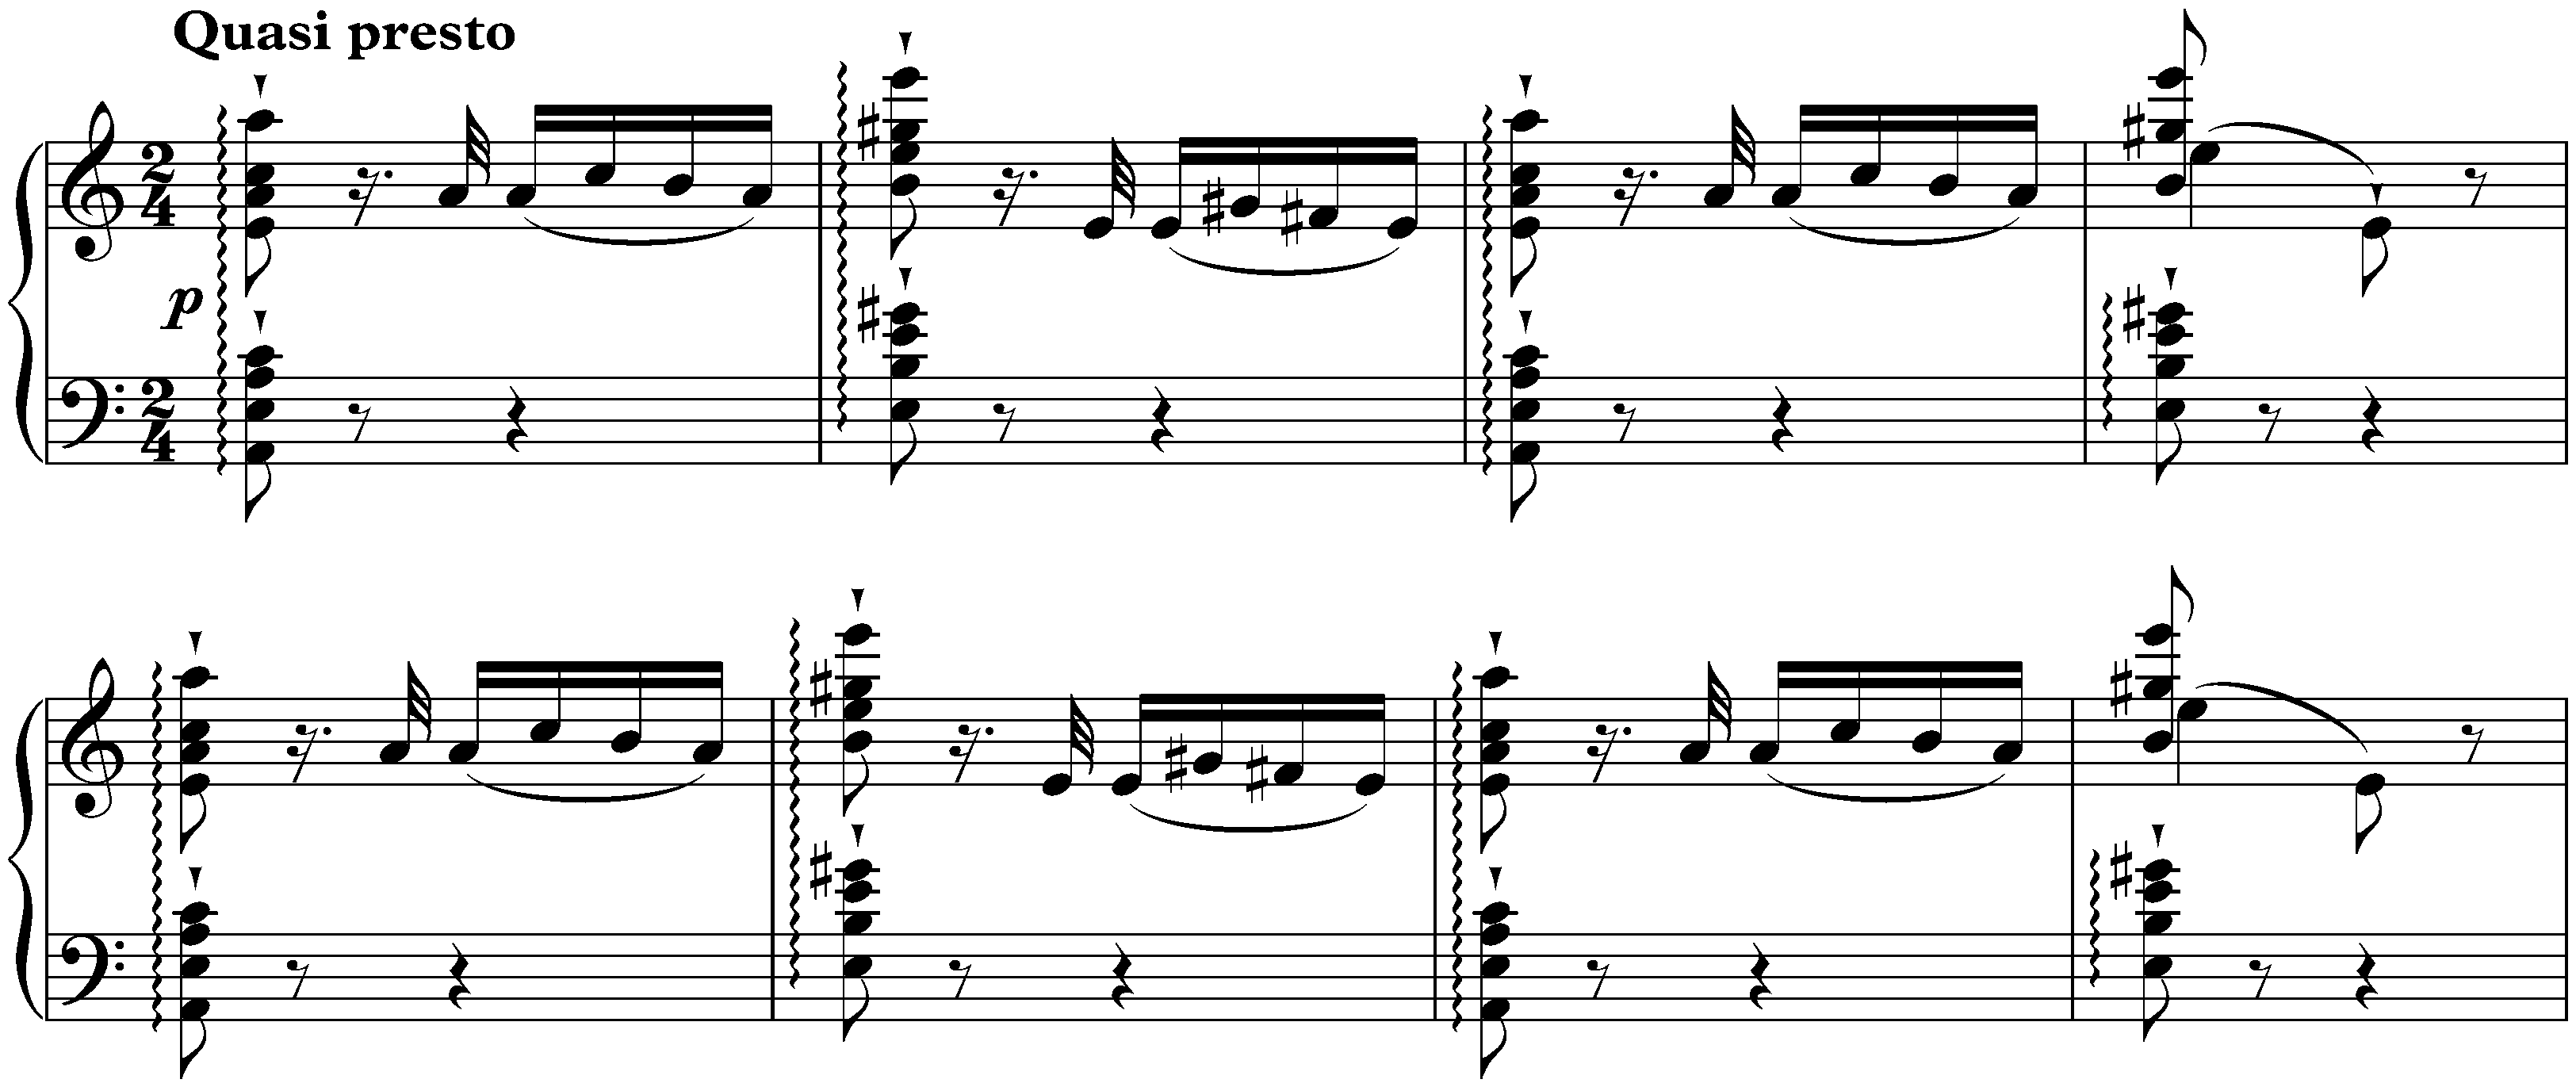 Six Grandes études de Paganini, S. 141; 6. A minor